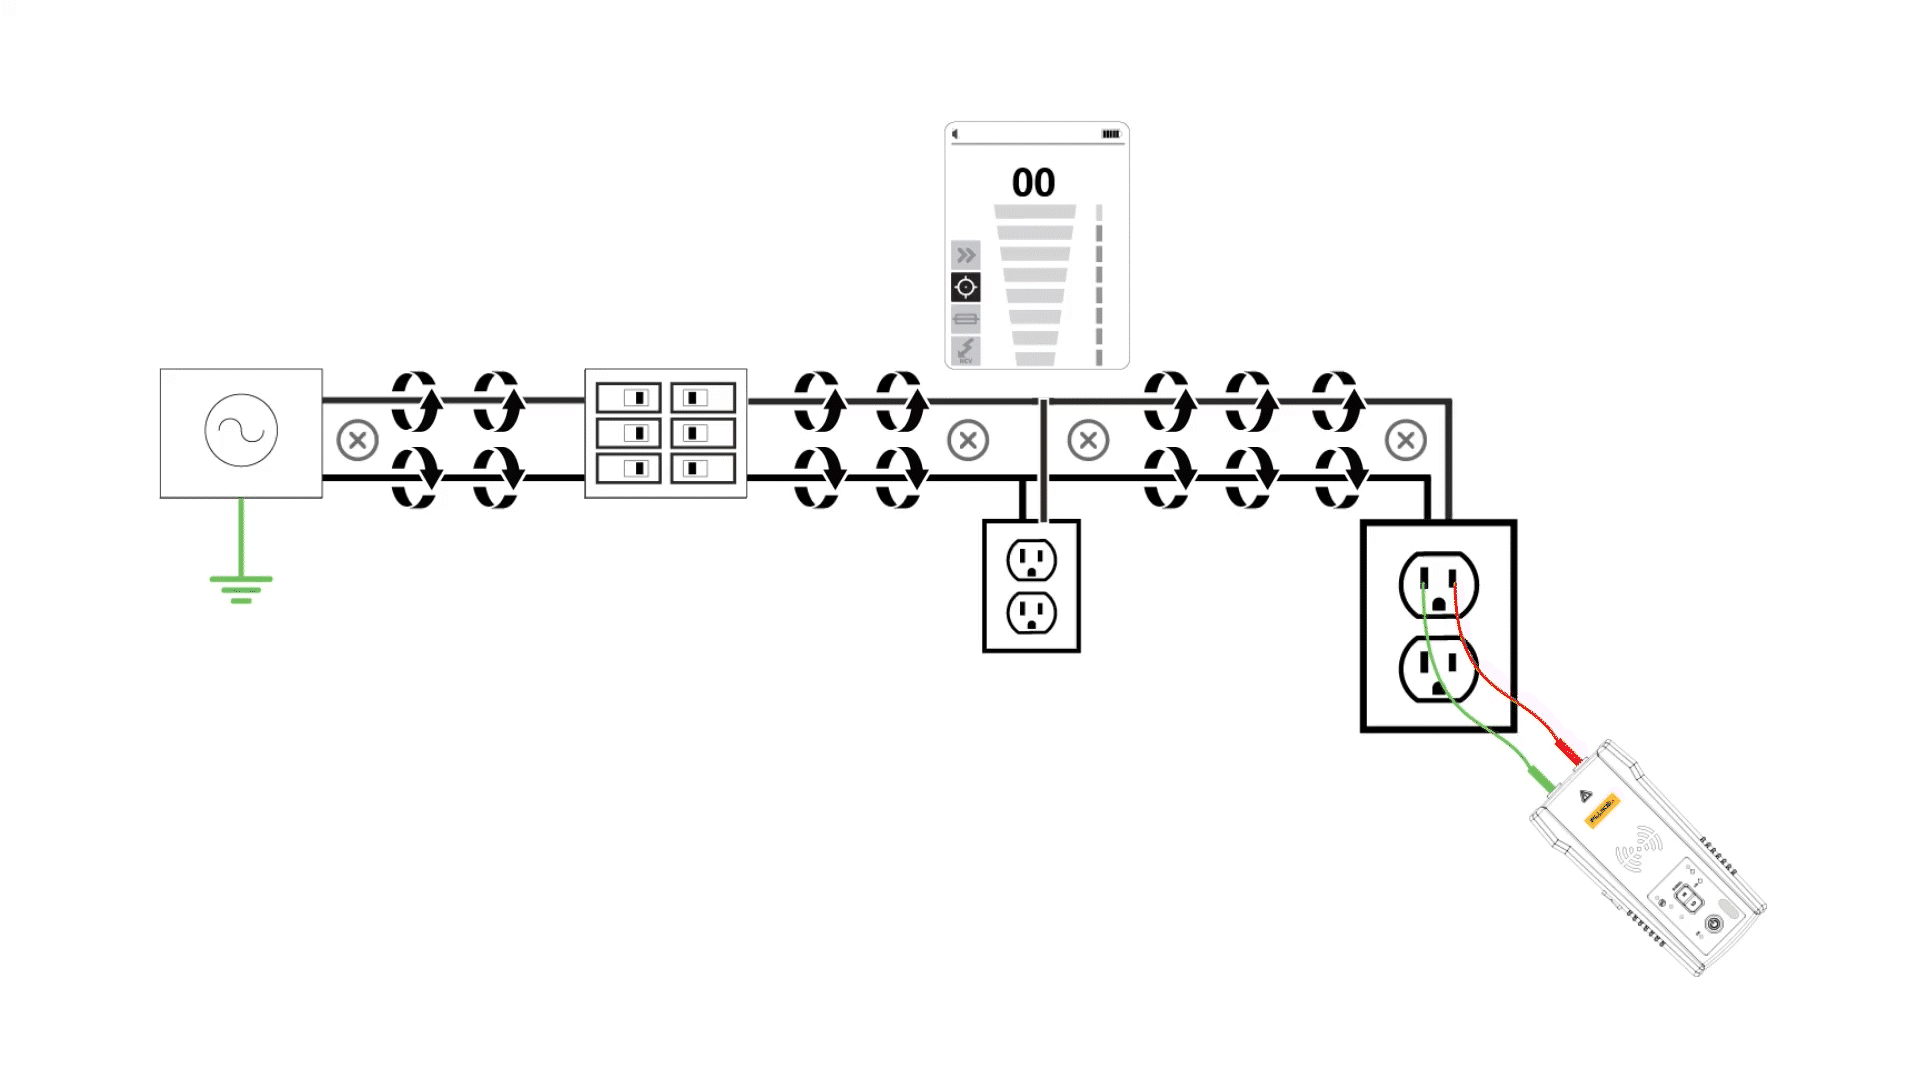 GIF-ledningsdiagram, der viser, hvordan et signal bevæger sig gennem nærliggende ledninger og skaber en "signalafbrydelses" effekt